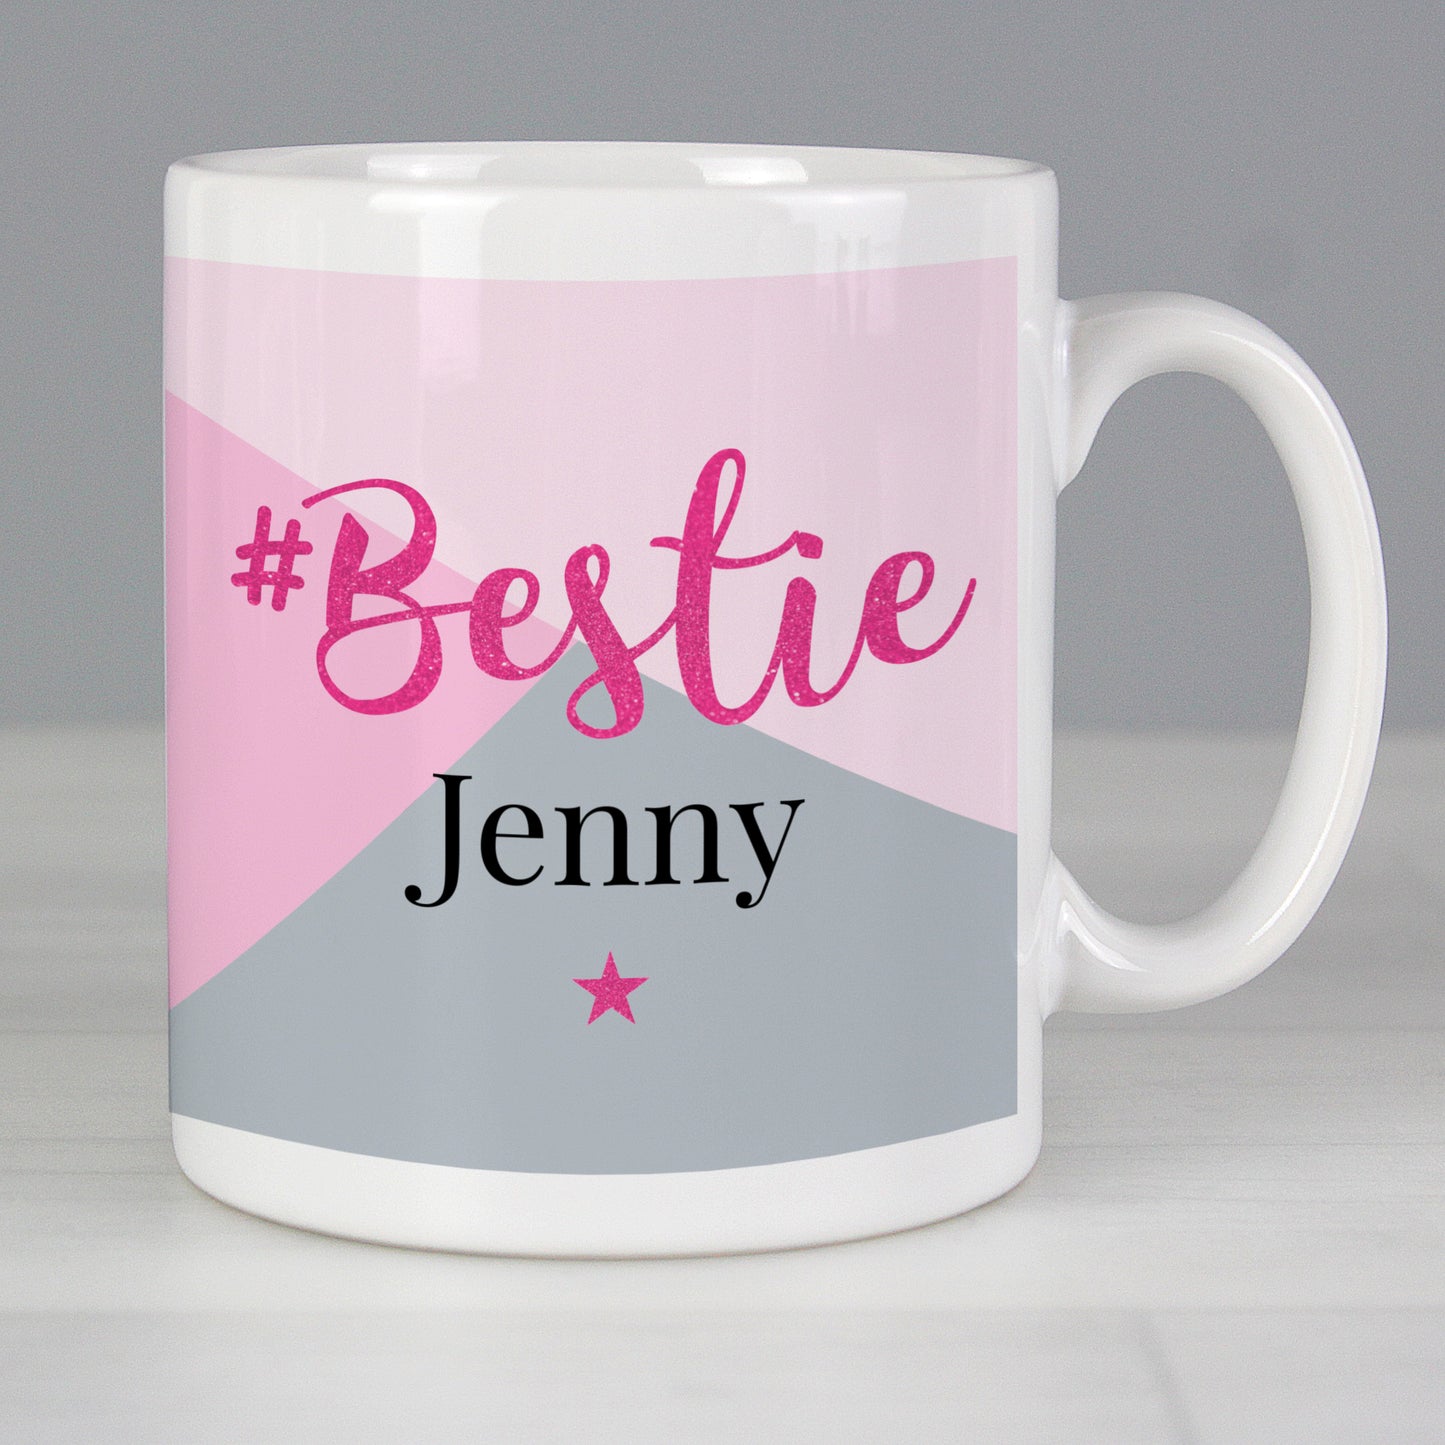 Personalised #Bestie Mug - Personalise It!